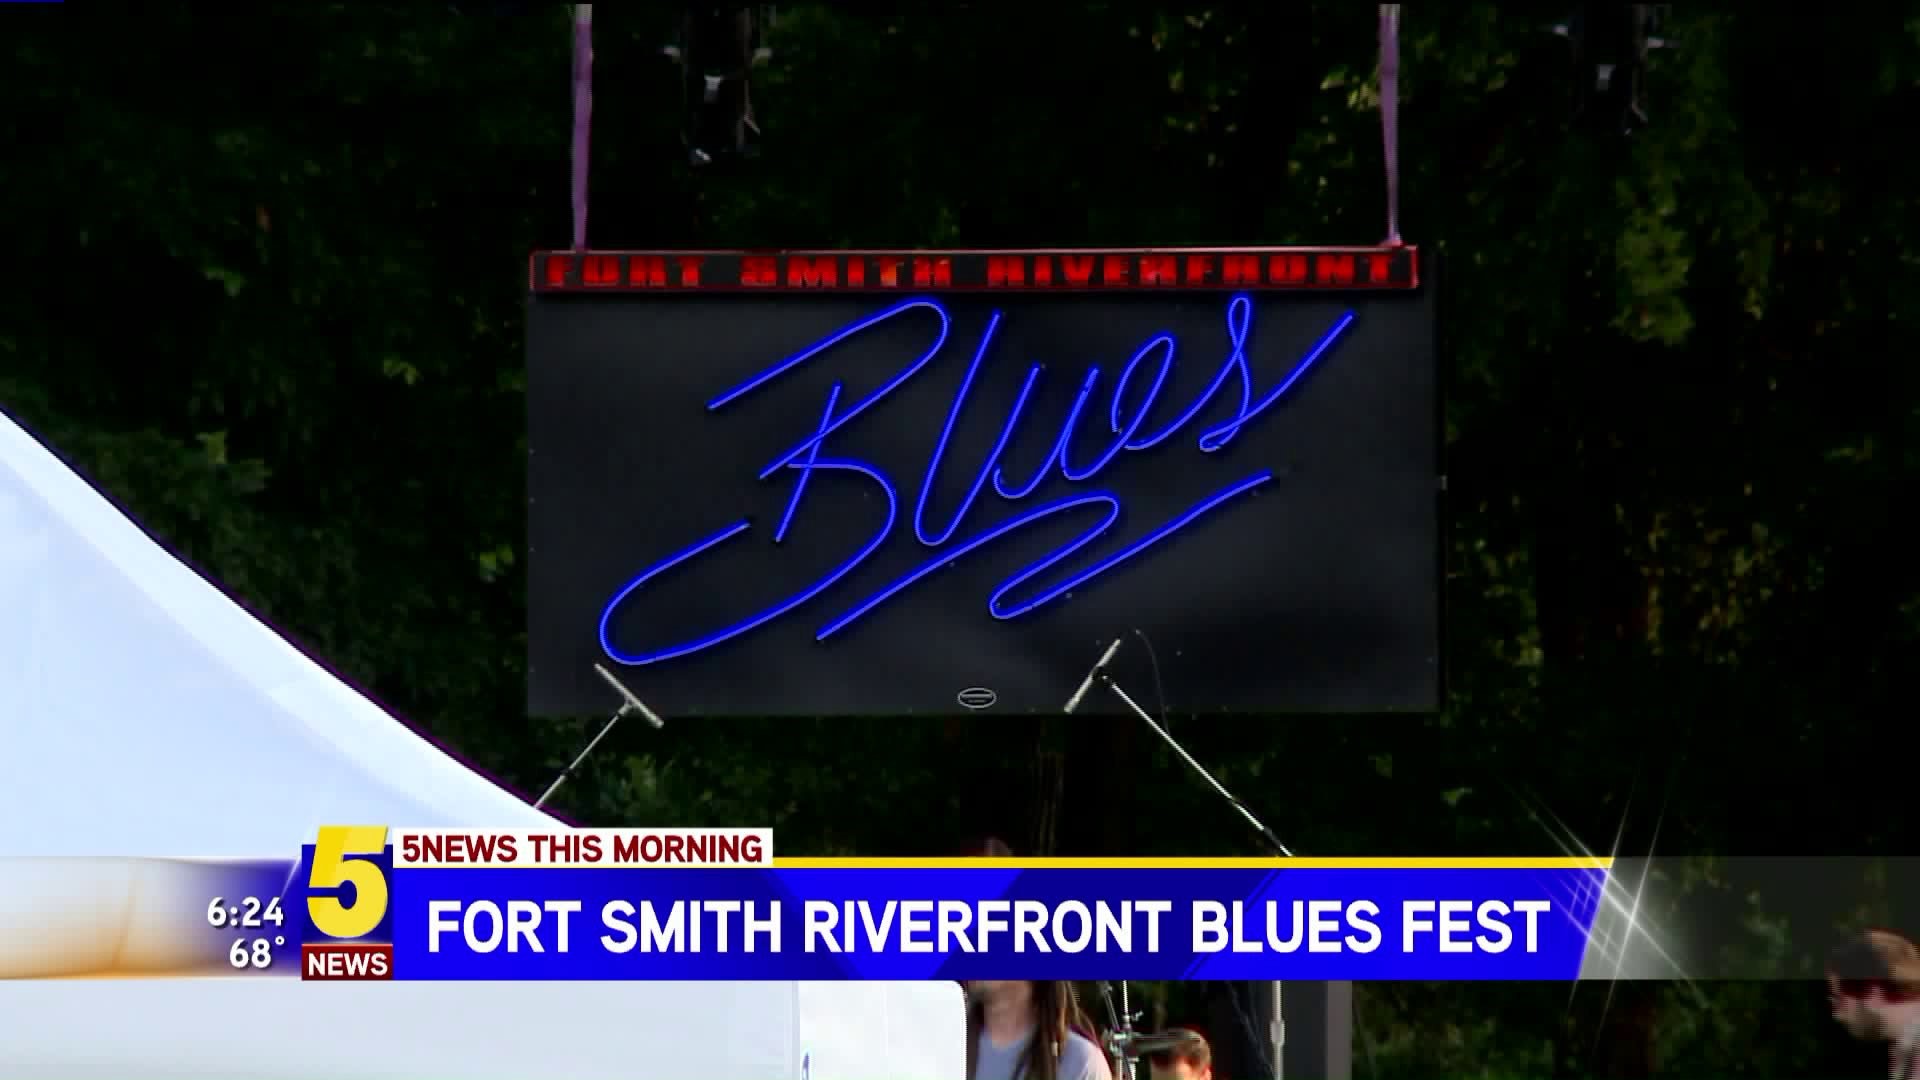 RIVERFRONT BLUES FEST